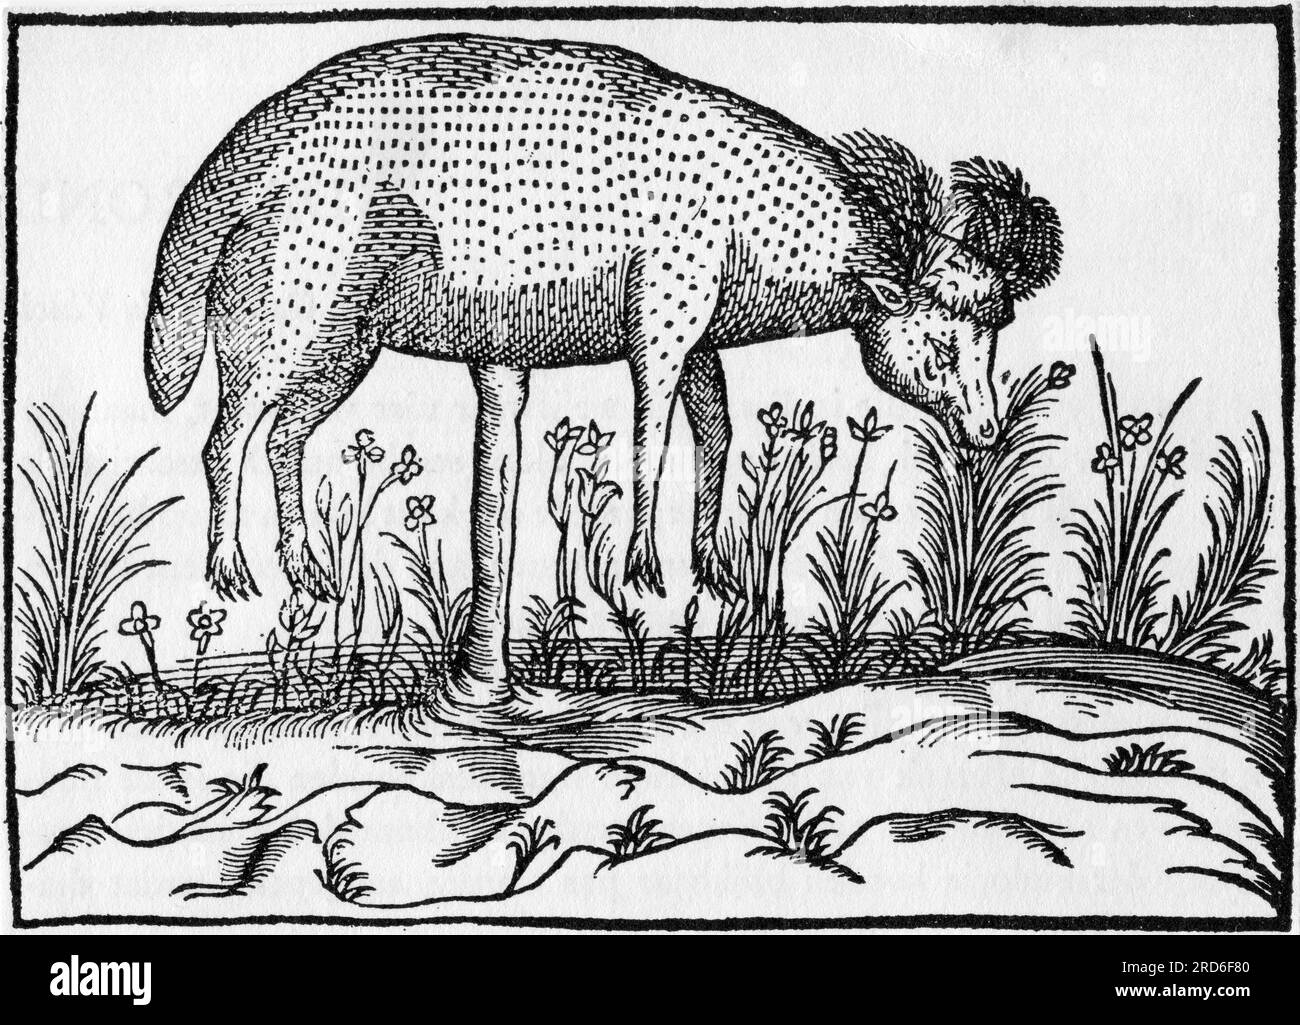 zoologie / Tiere, Schafe, ein artarianisches Lamm, auf einem Stiel wachsen, zeichnen, ZUSÄTZLICHE-RECHTE-FREIGABE-INFO-NICHT-VERFÜGBAR Stockfoto